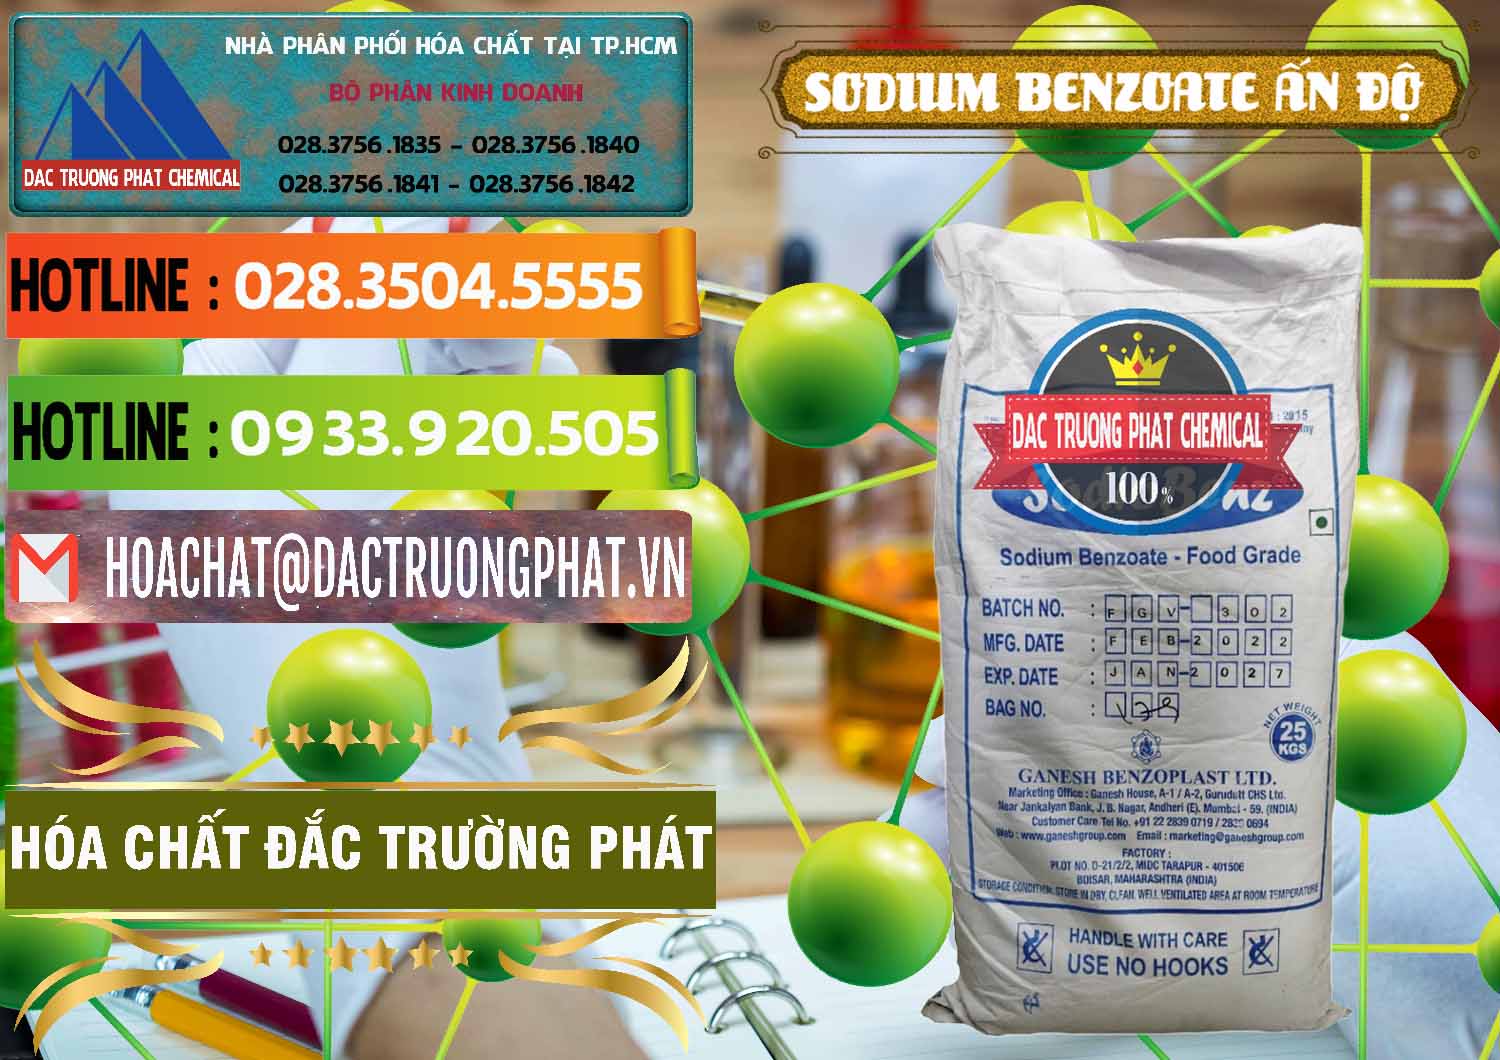 Đơn vị chuyên bán ( cung cấp ) Sodium Benzoate - Mốc Bột Ấn Độ India - 0361 - Nơi phân phối - kinh doanh hóa chất tại TP.HCM - cungcaphoachat.com.vn